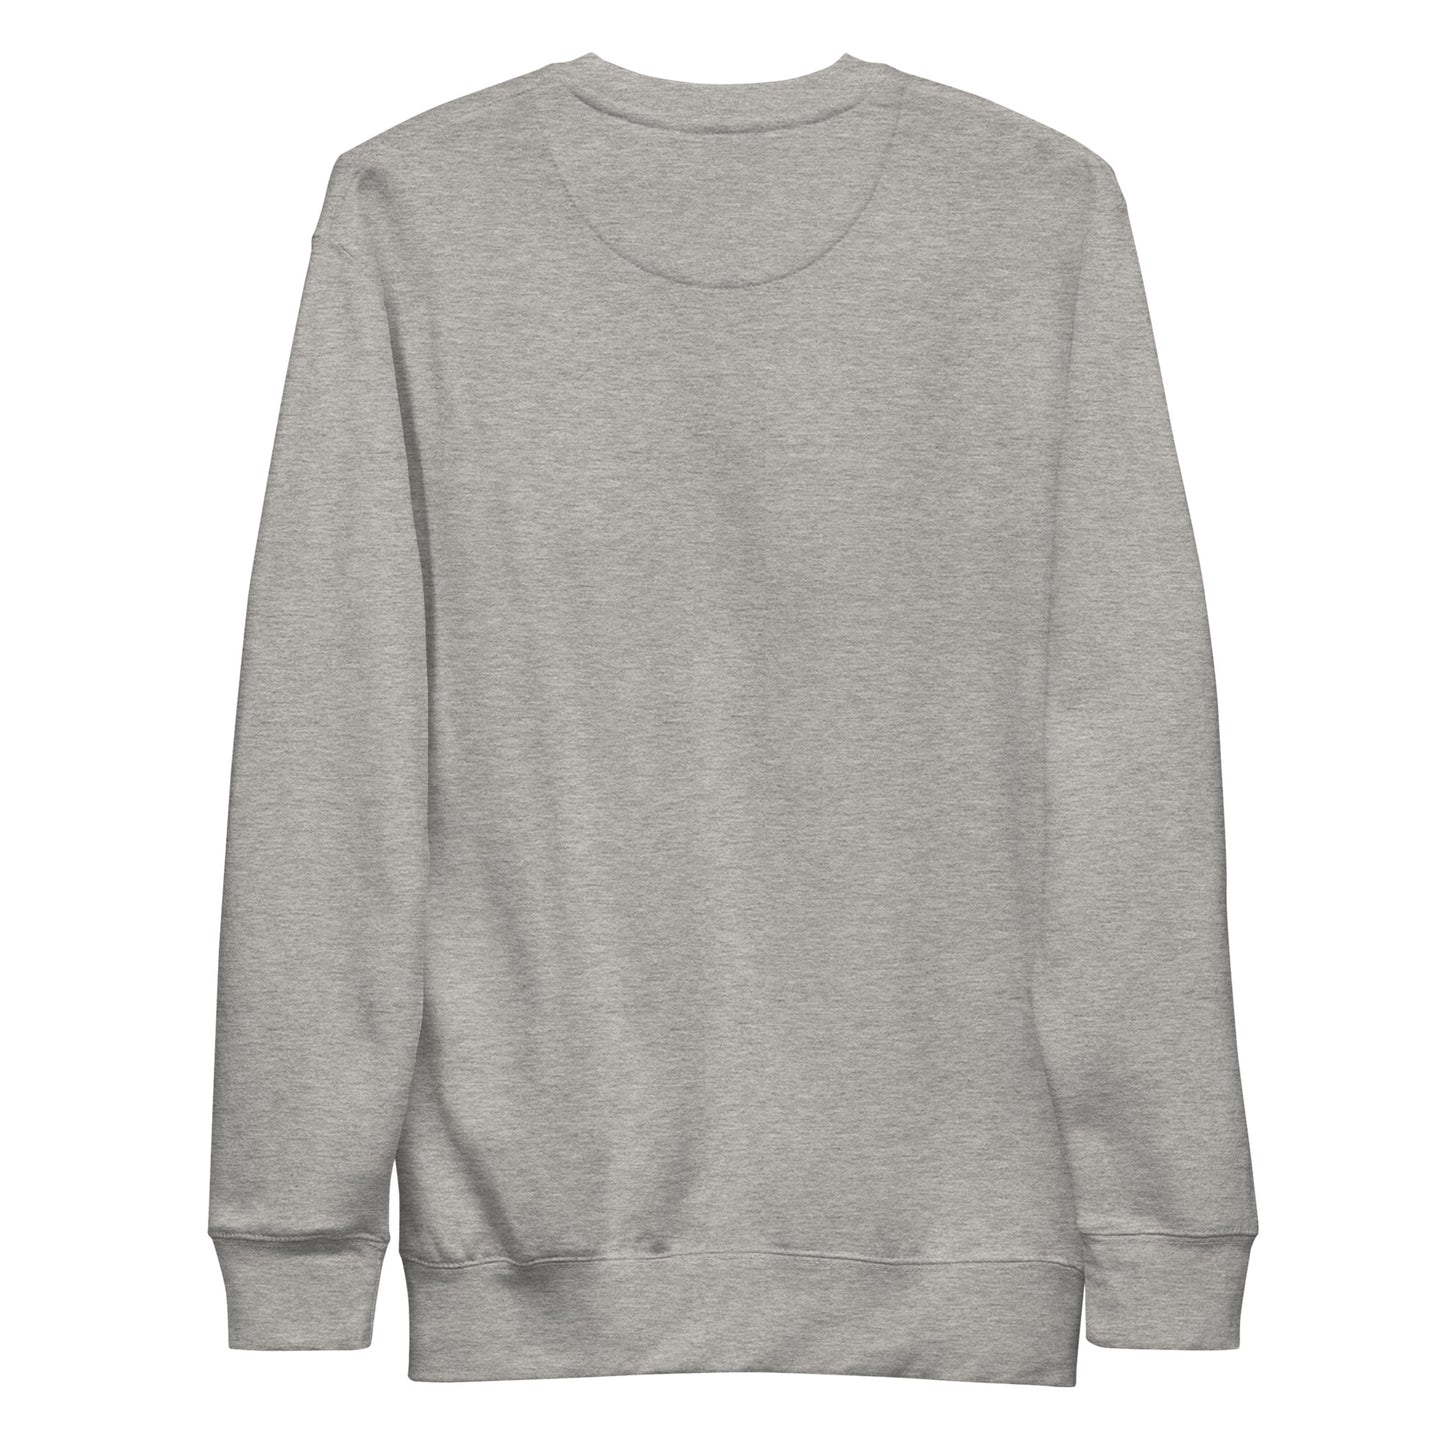 ISTJ Unisex Premium Sweatshirt